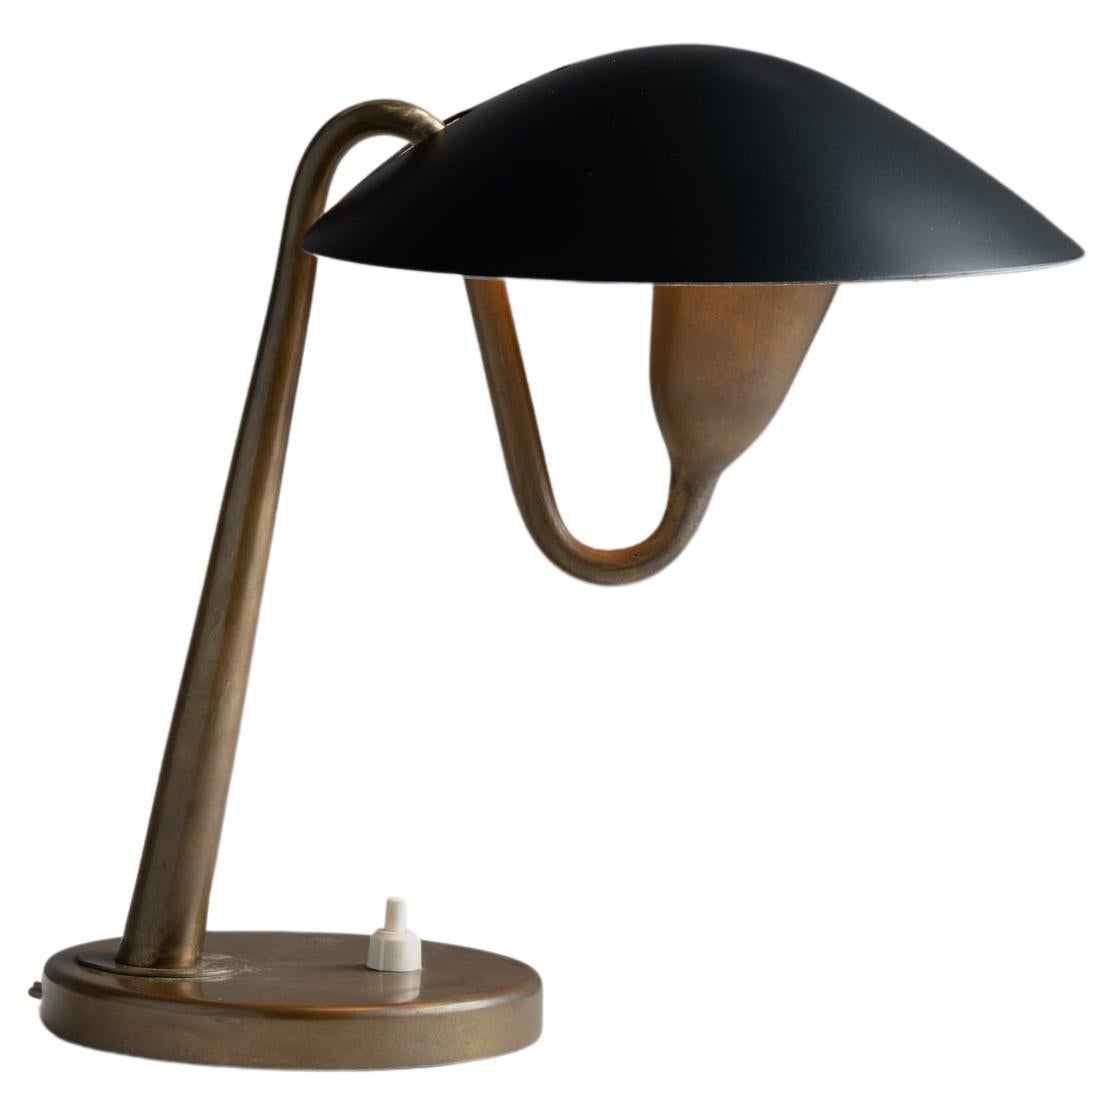 Model 200 Table Lamp by Giuseppe Ostuni for Oluce